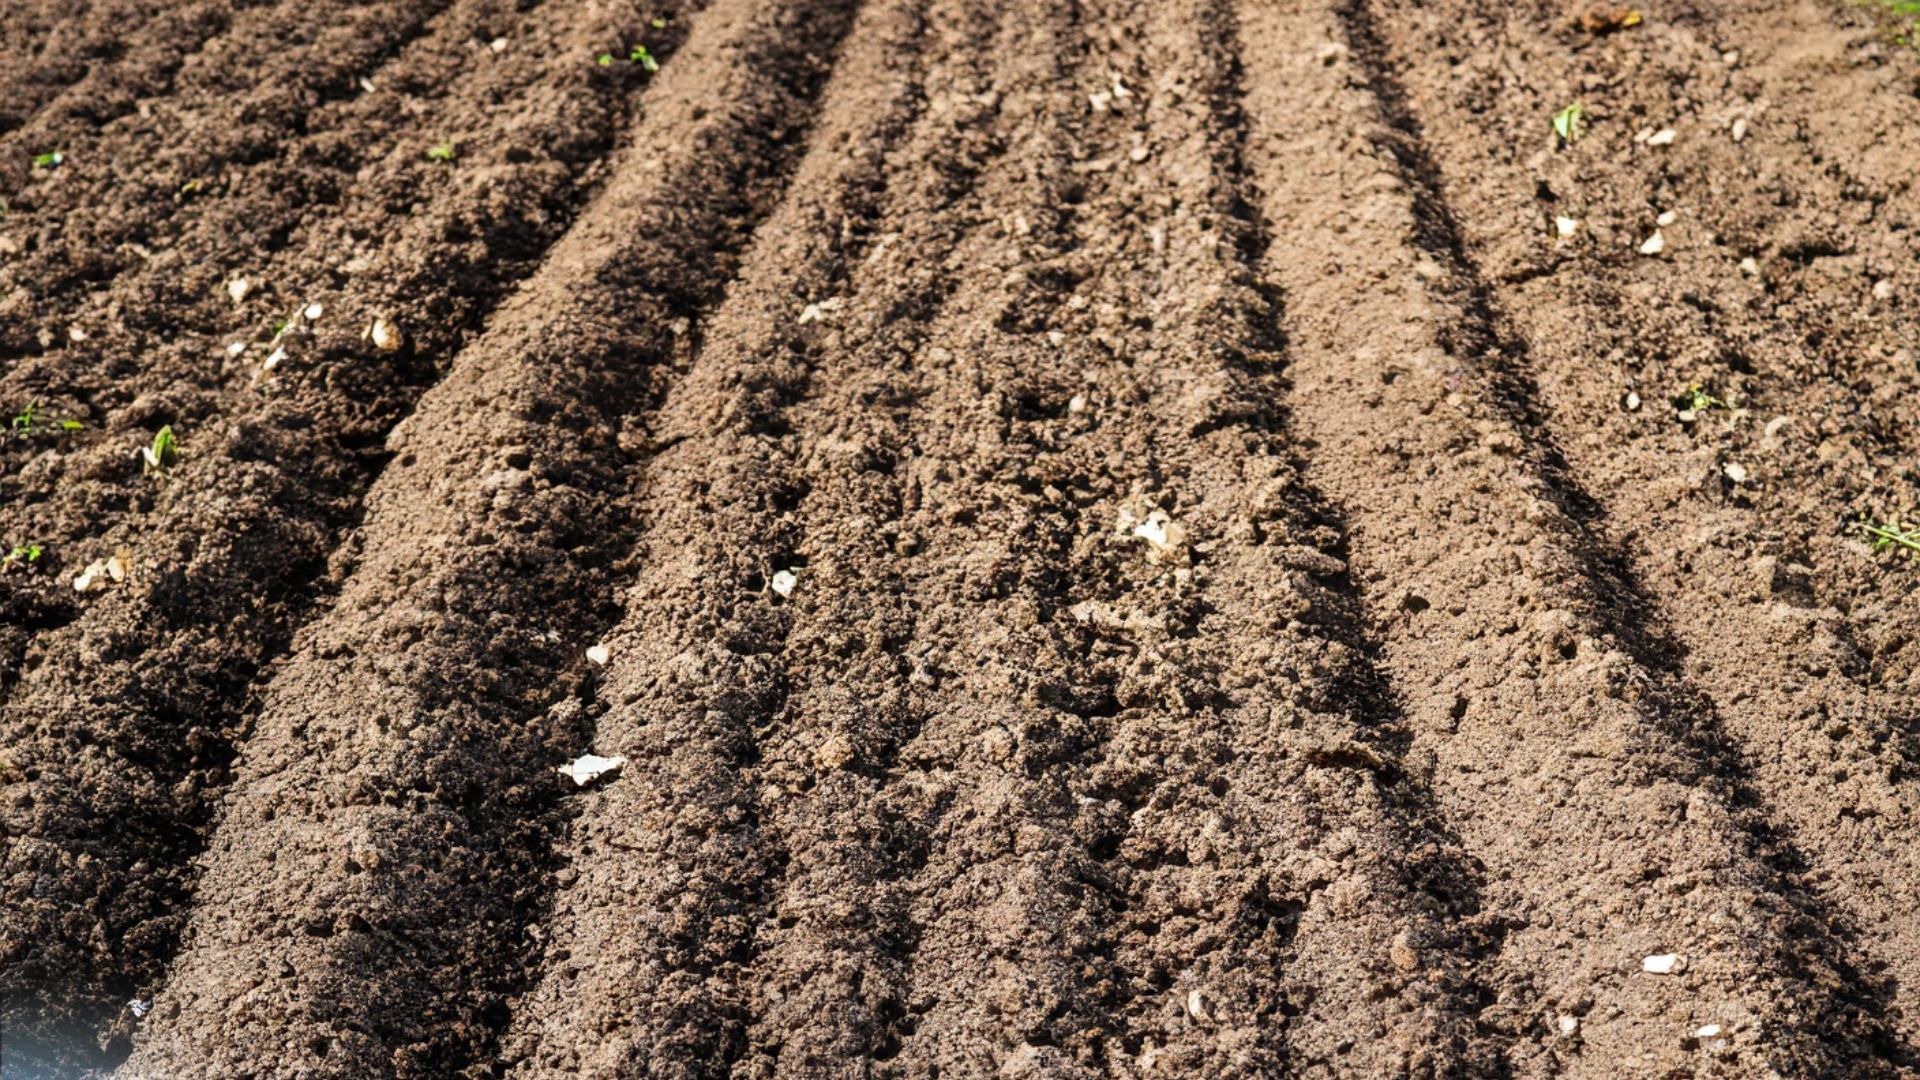 Terreno di coltivazione dello zafferano pronta per piantare i bulbi